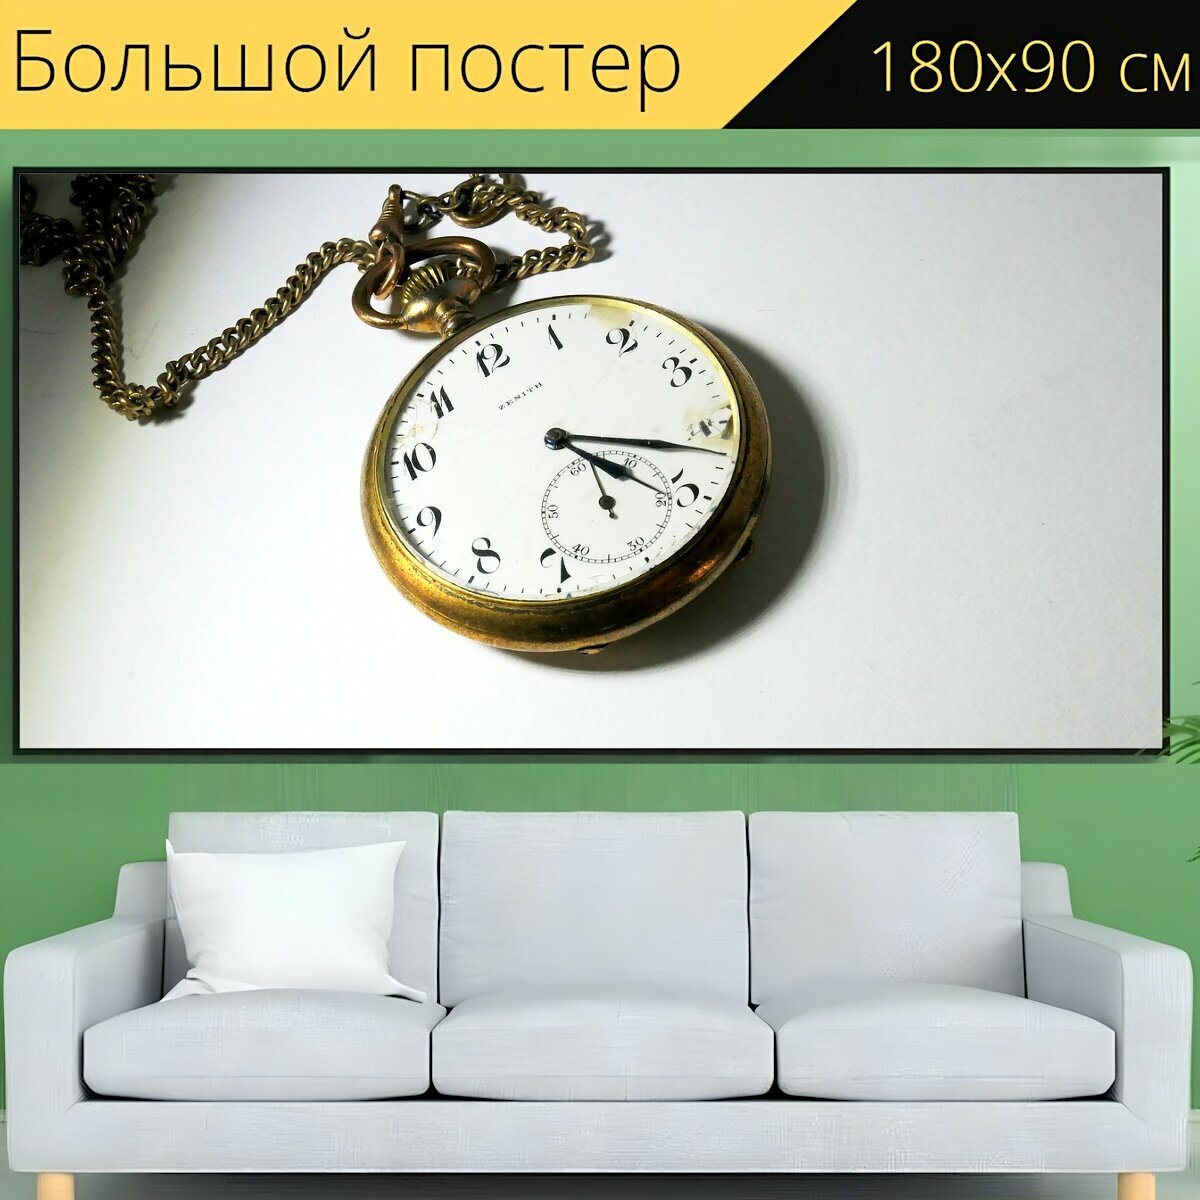 Большой постер "Карманные часы, цепь, винтаж" 180 x 90 см. для интерьера